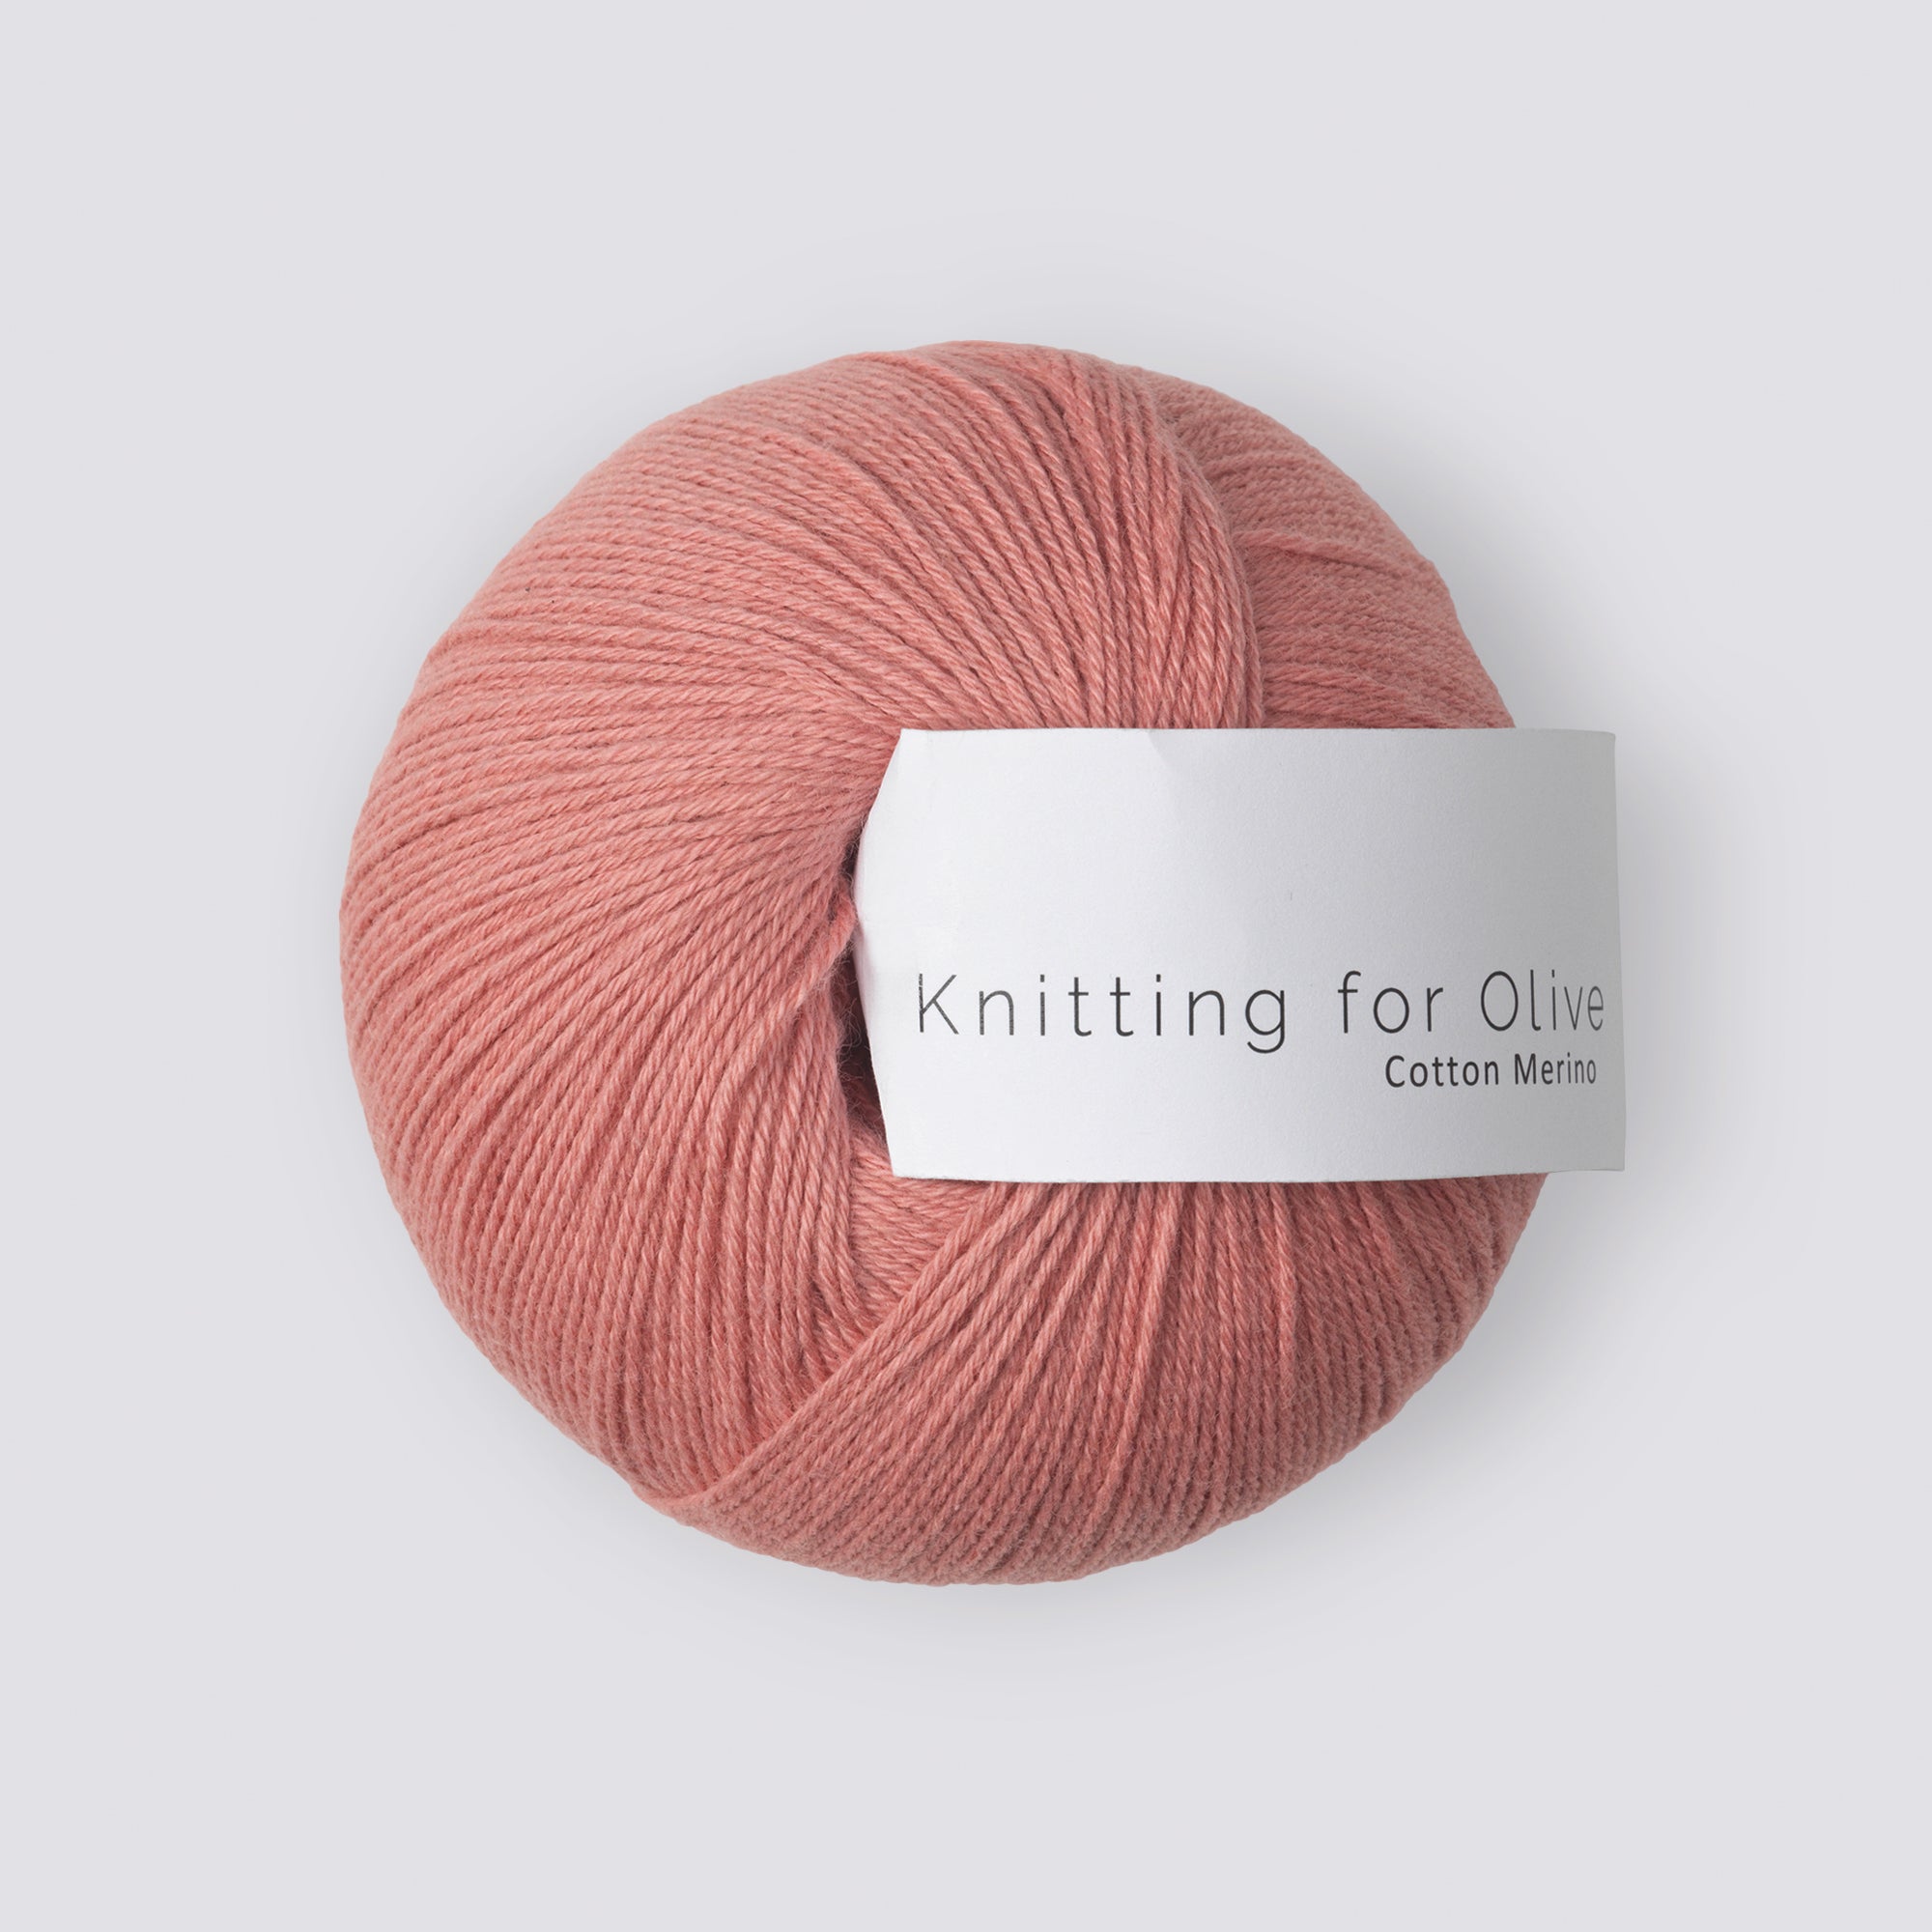 Knitting for Olive Cotton Merino - Rhabarber Rose